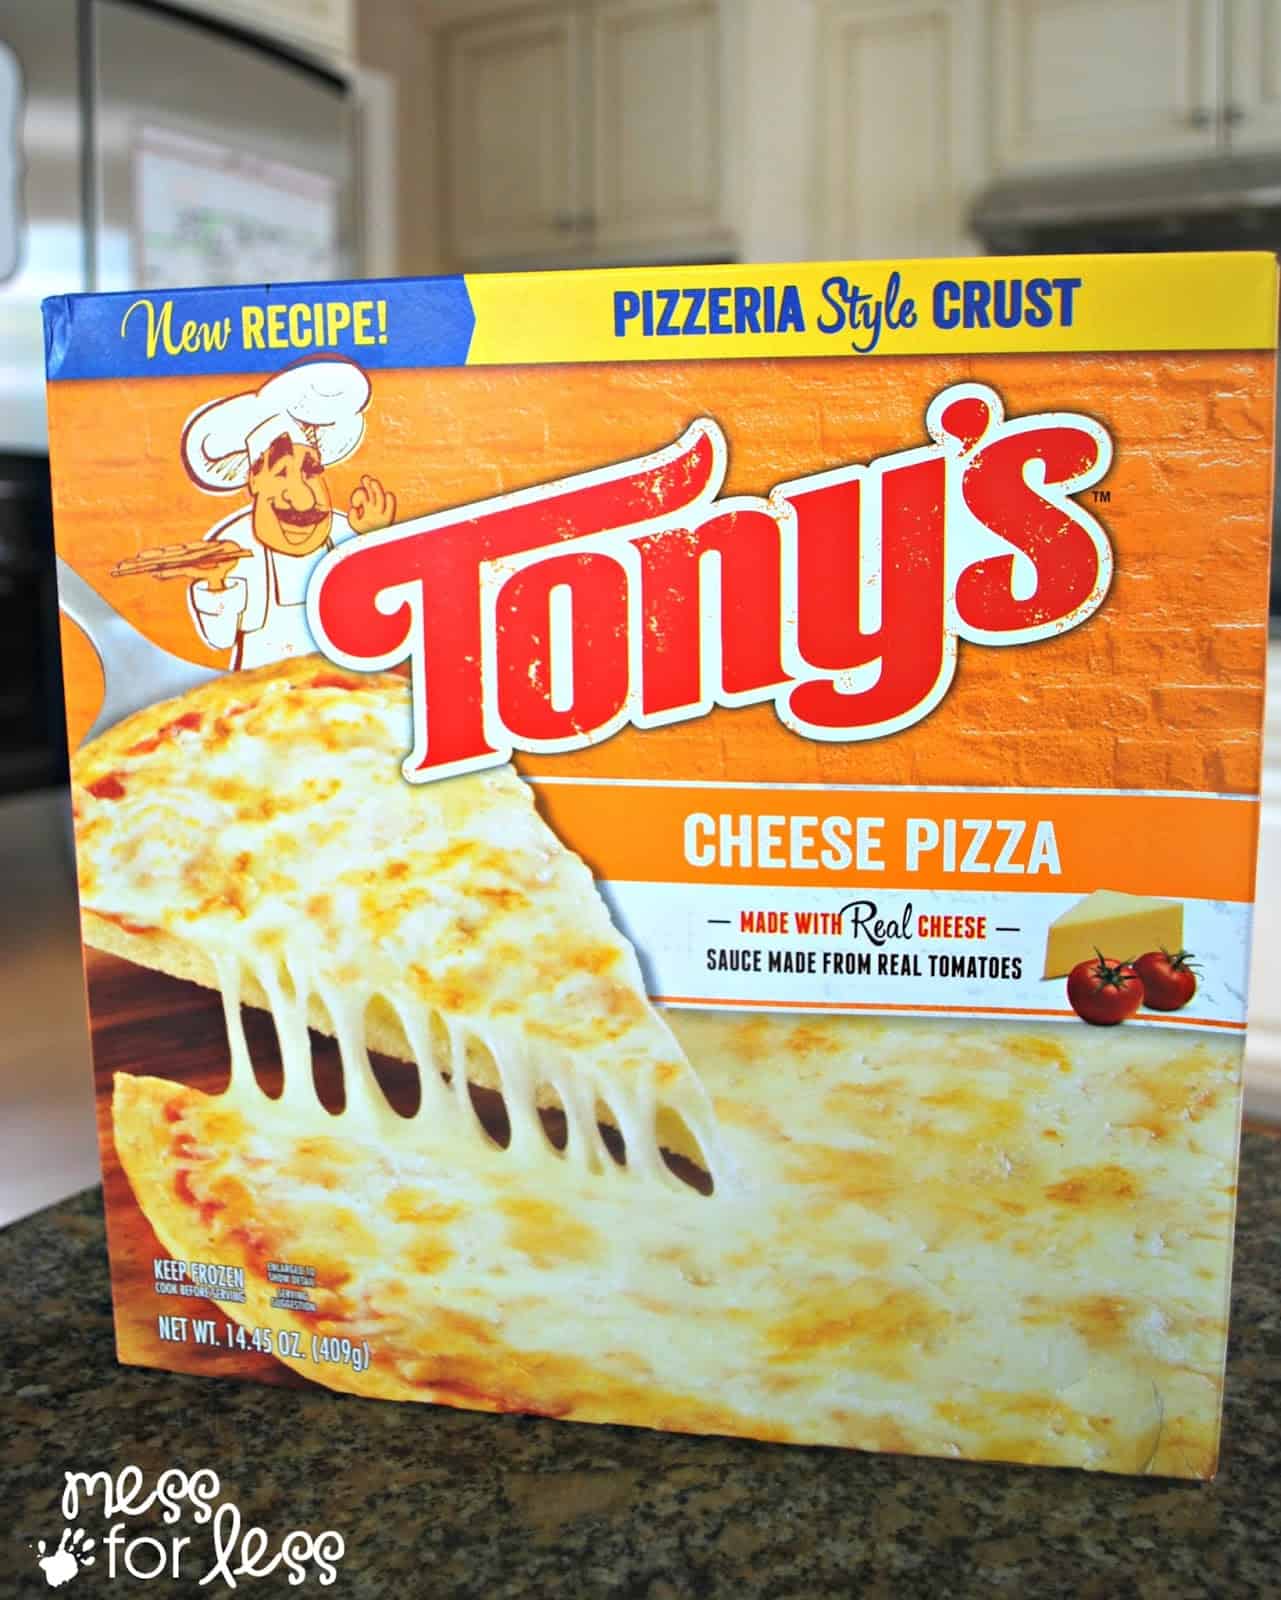 Tony's Pizza #tonyspizzeria #PMedia #ad